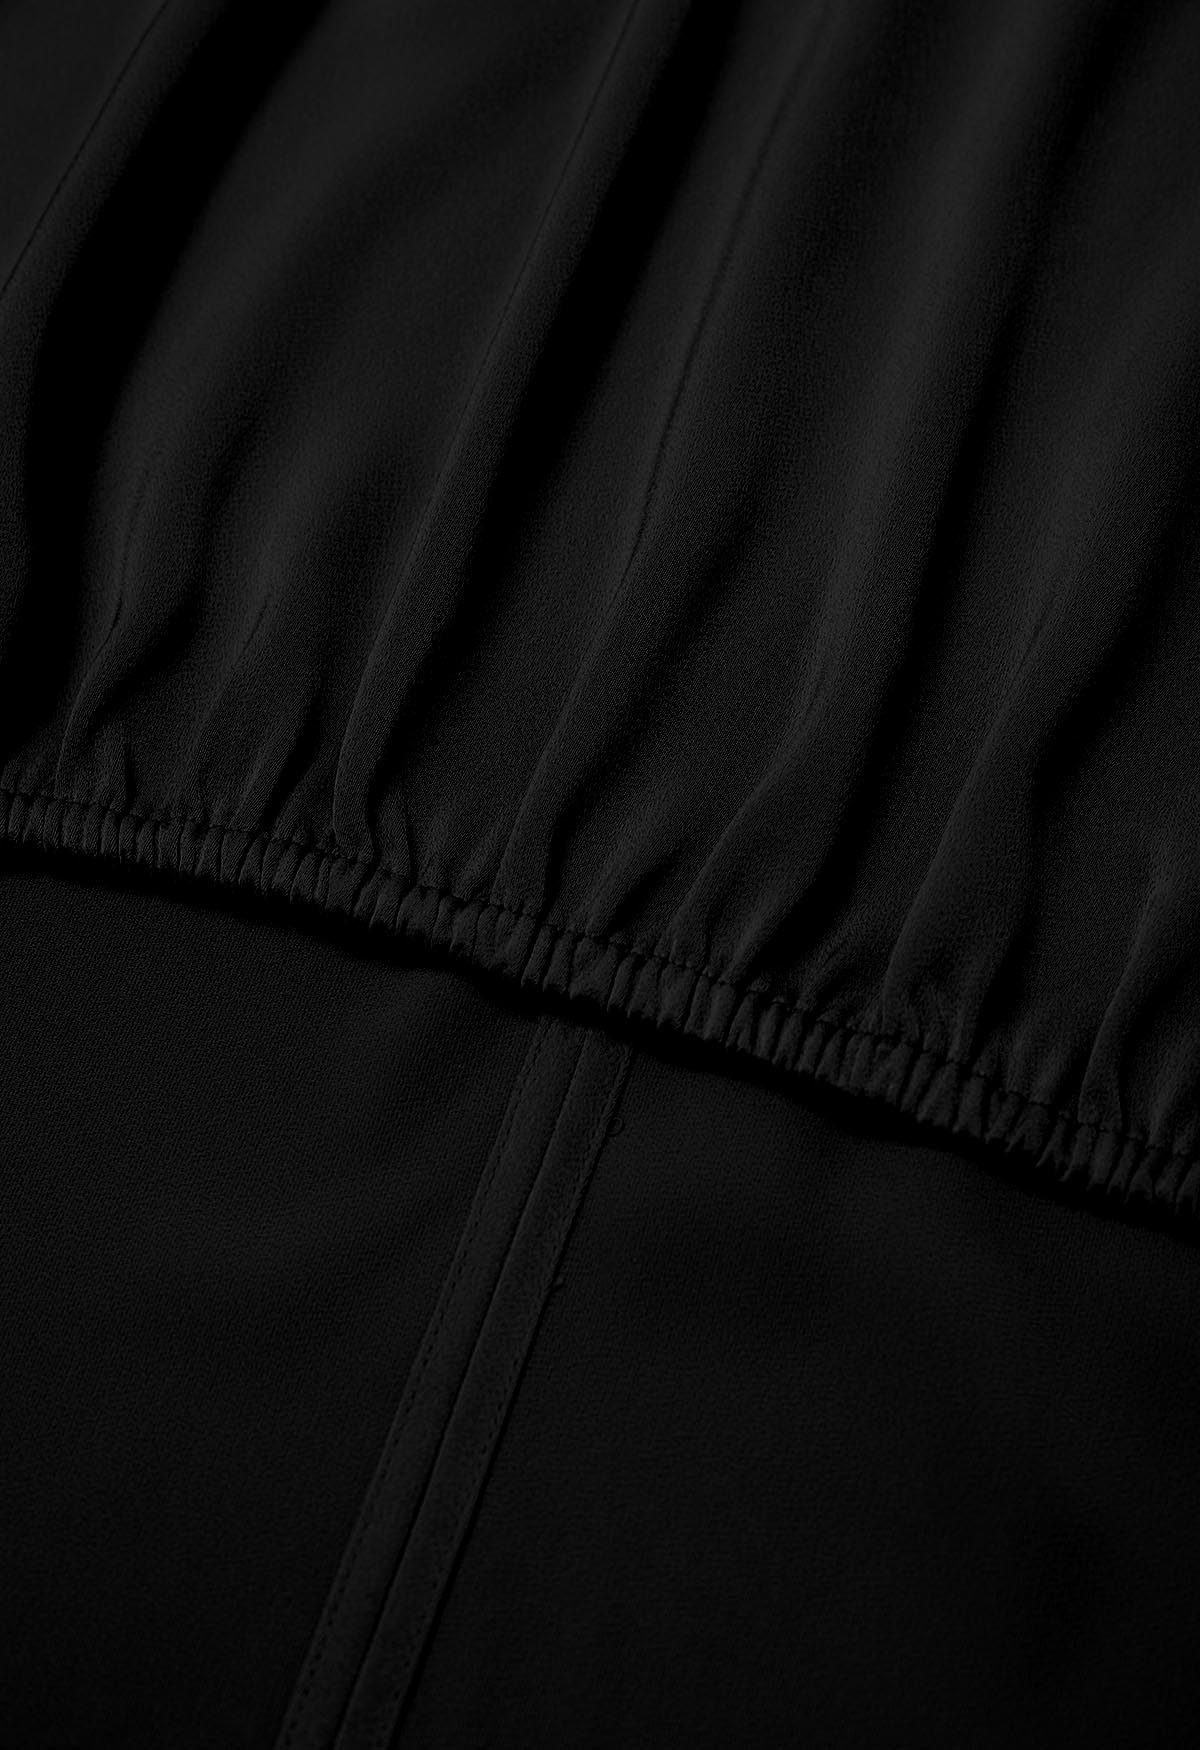 Crisscross Waist V-Neck Shirt in Black